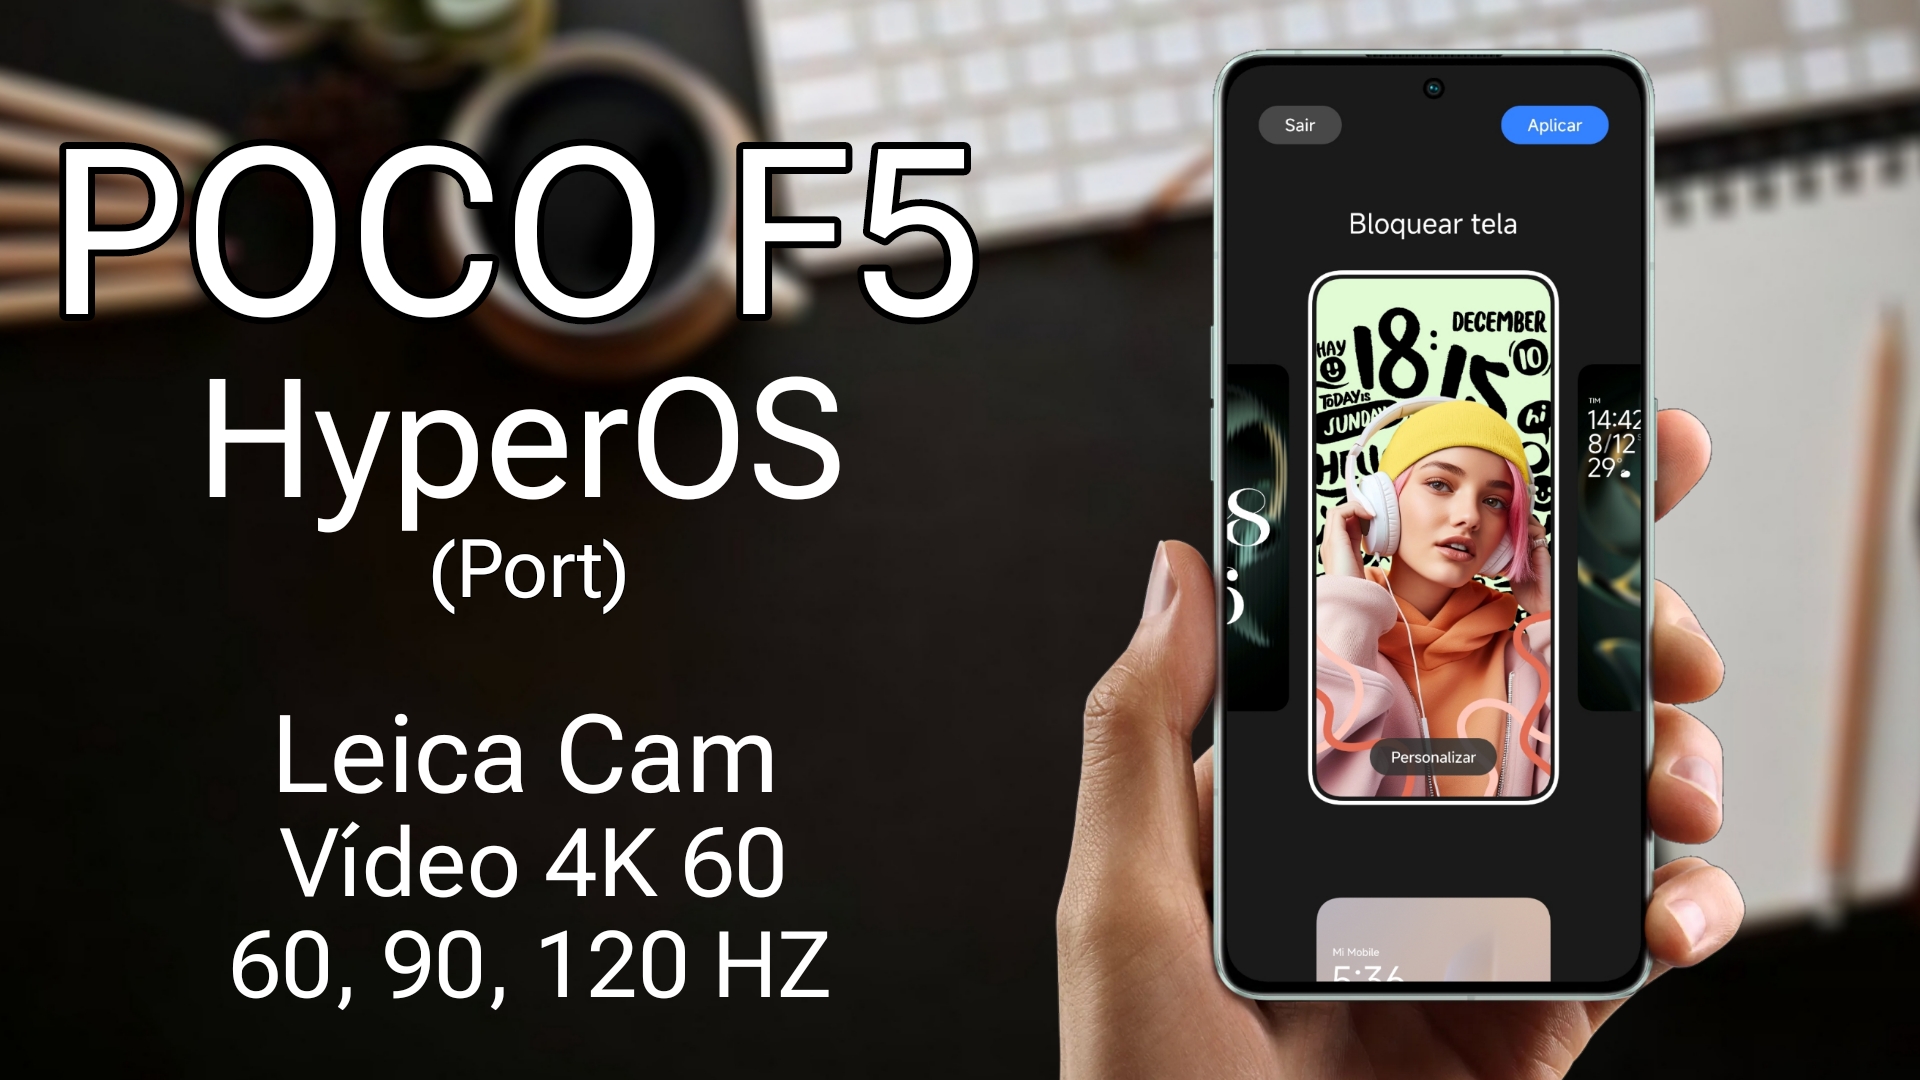 Poco F5 Hyperos Android 14 Instalação E Review Desbloquei Novos Recursos Instale Agora 8350